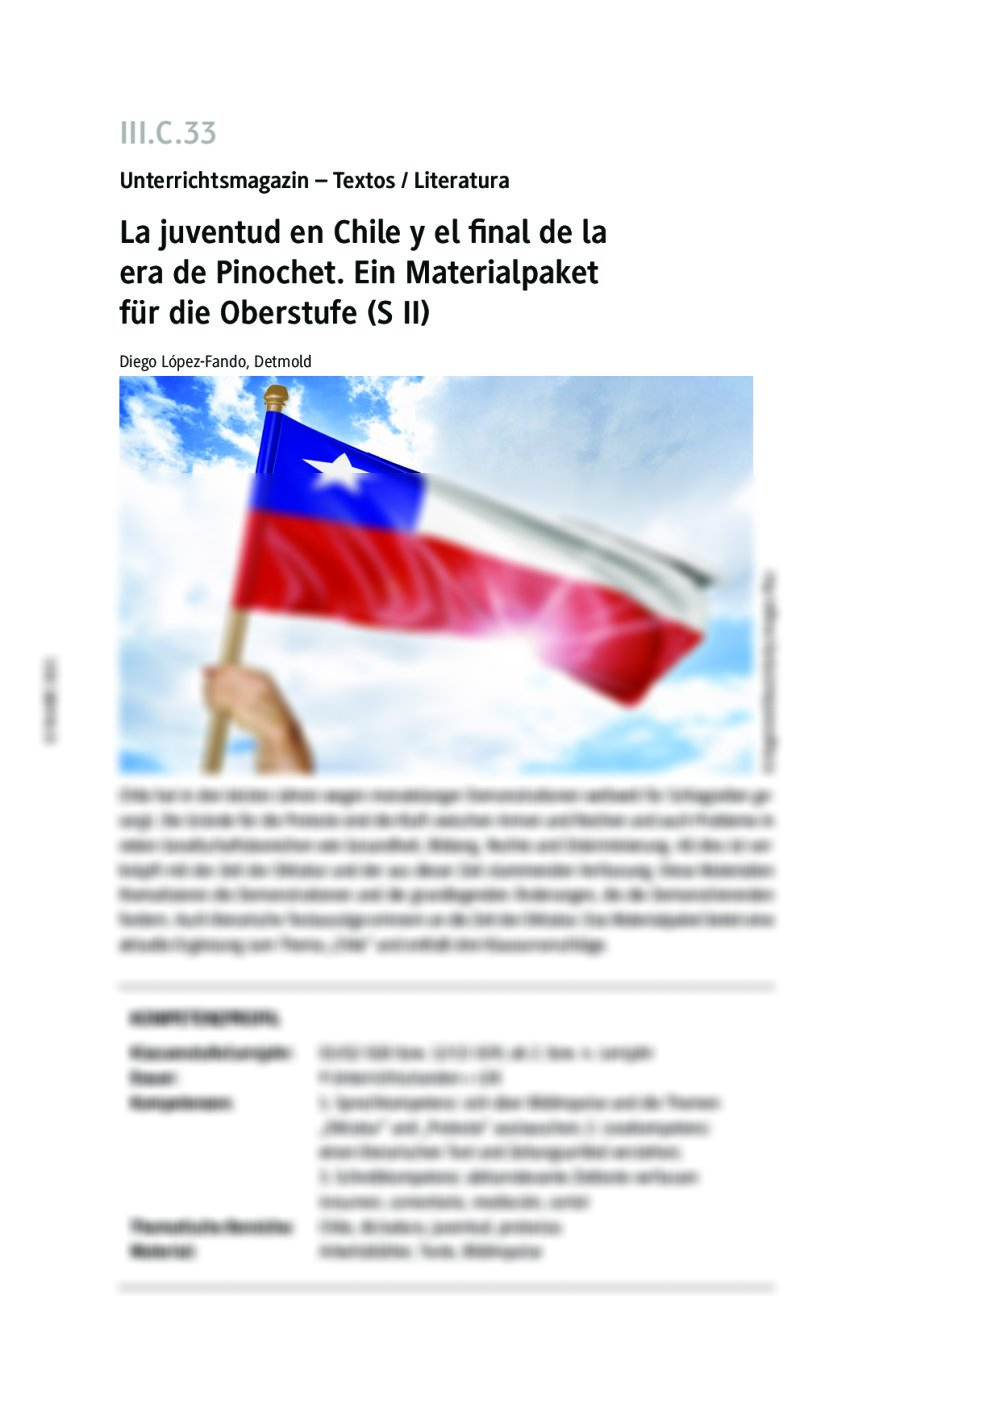 La juventud en Chile y el final de la era de Pinochet - Seite 1